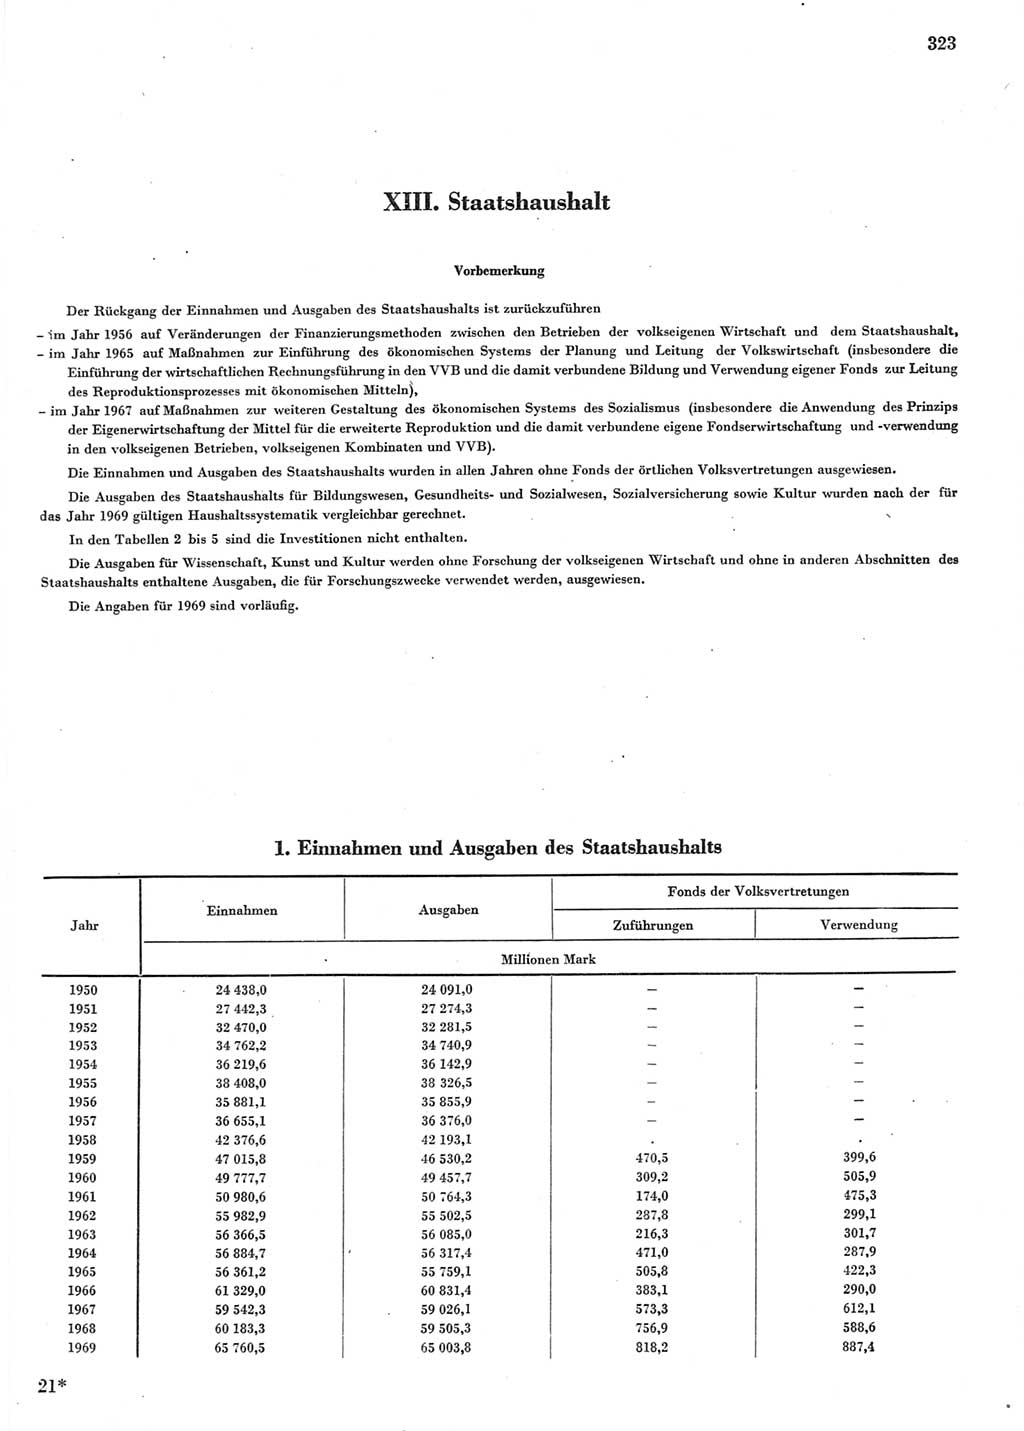 Statistisches Jahrbuch der Deutschen Demokratischen Republik (DDR) 1970, Seite 323 (Stat. Jb. DDR 1970, S. 323)